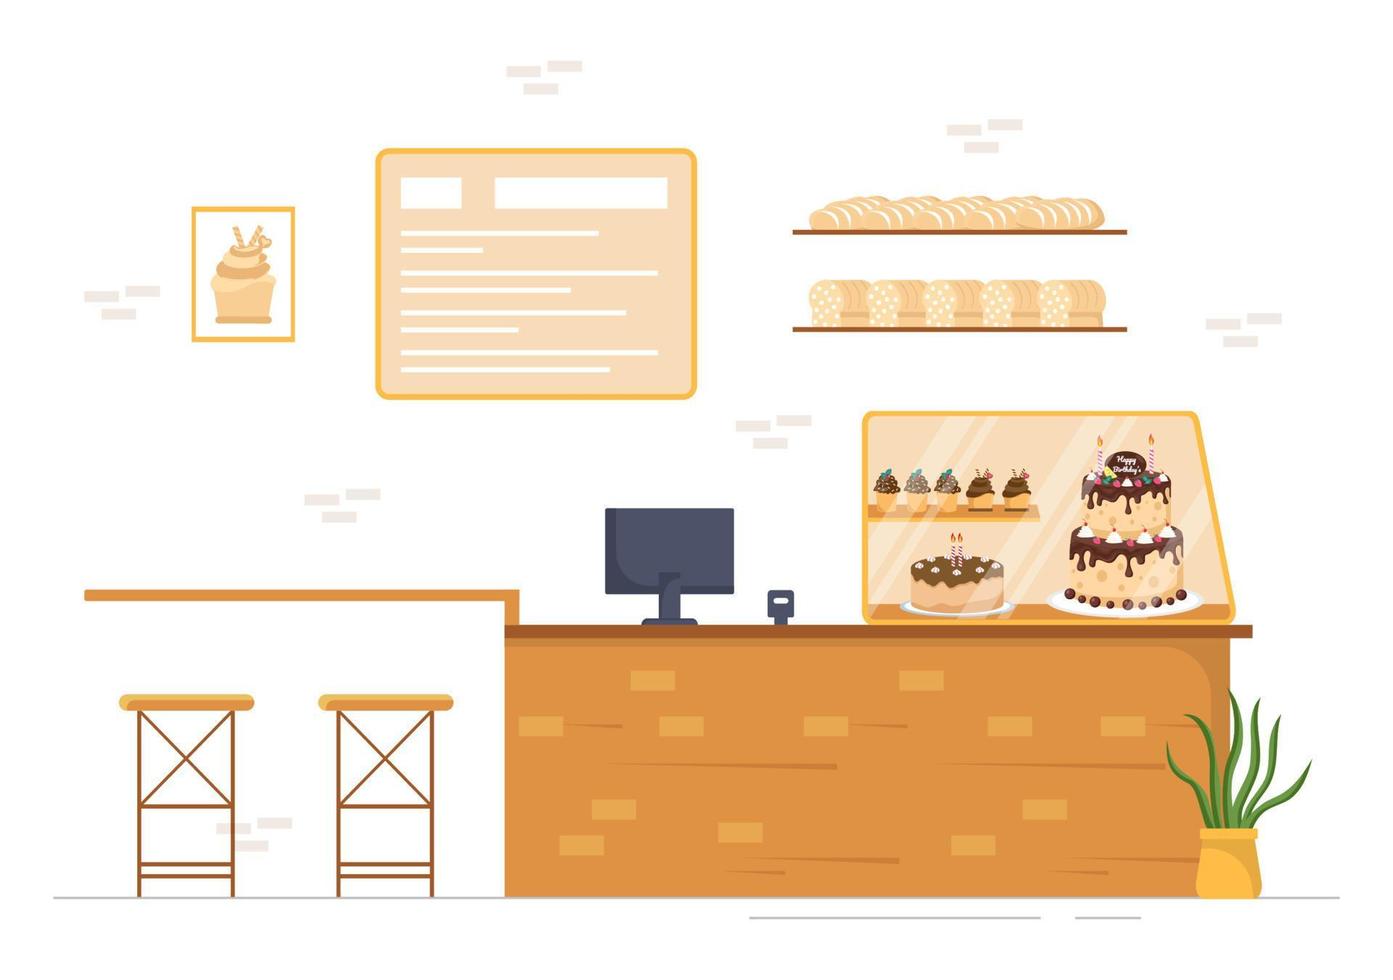 tienda de dulces que vende varios productos de panadería, magdalenas, pasteles, pasteles o dulces en dibujos animados planos dibujados a mano ilustración de plantillas vector